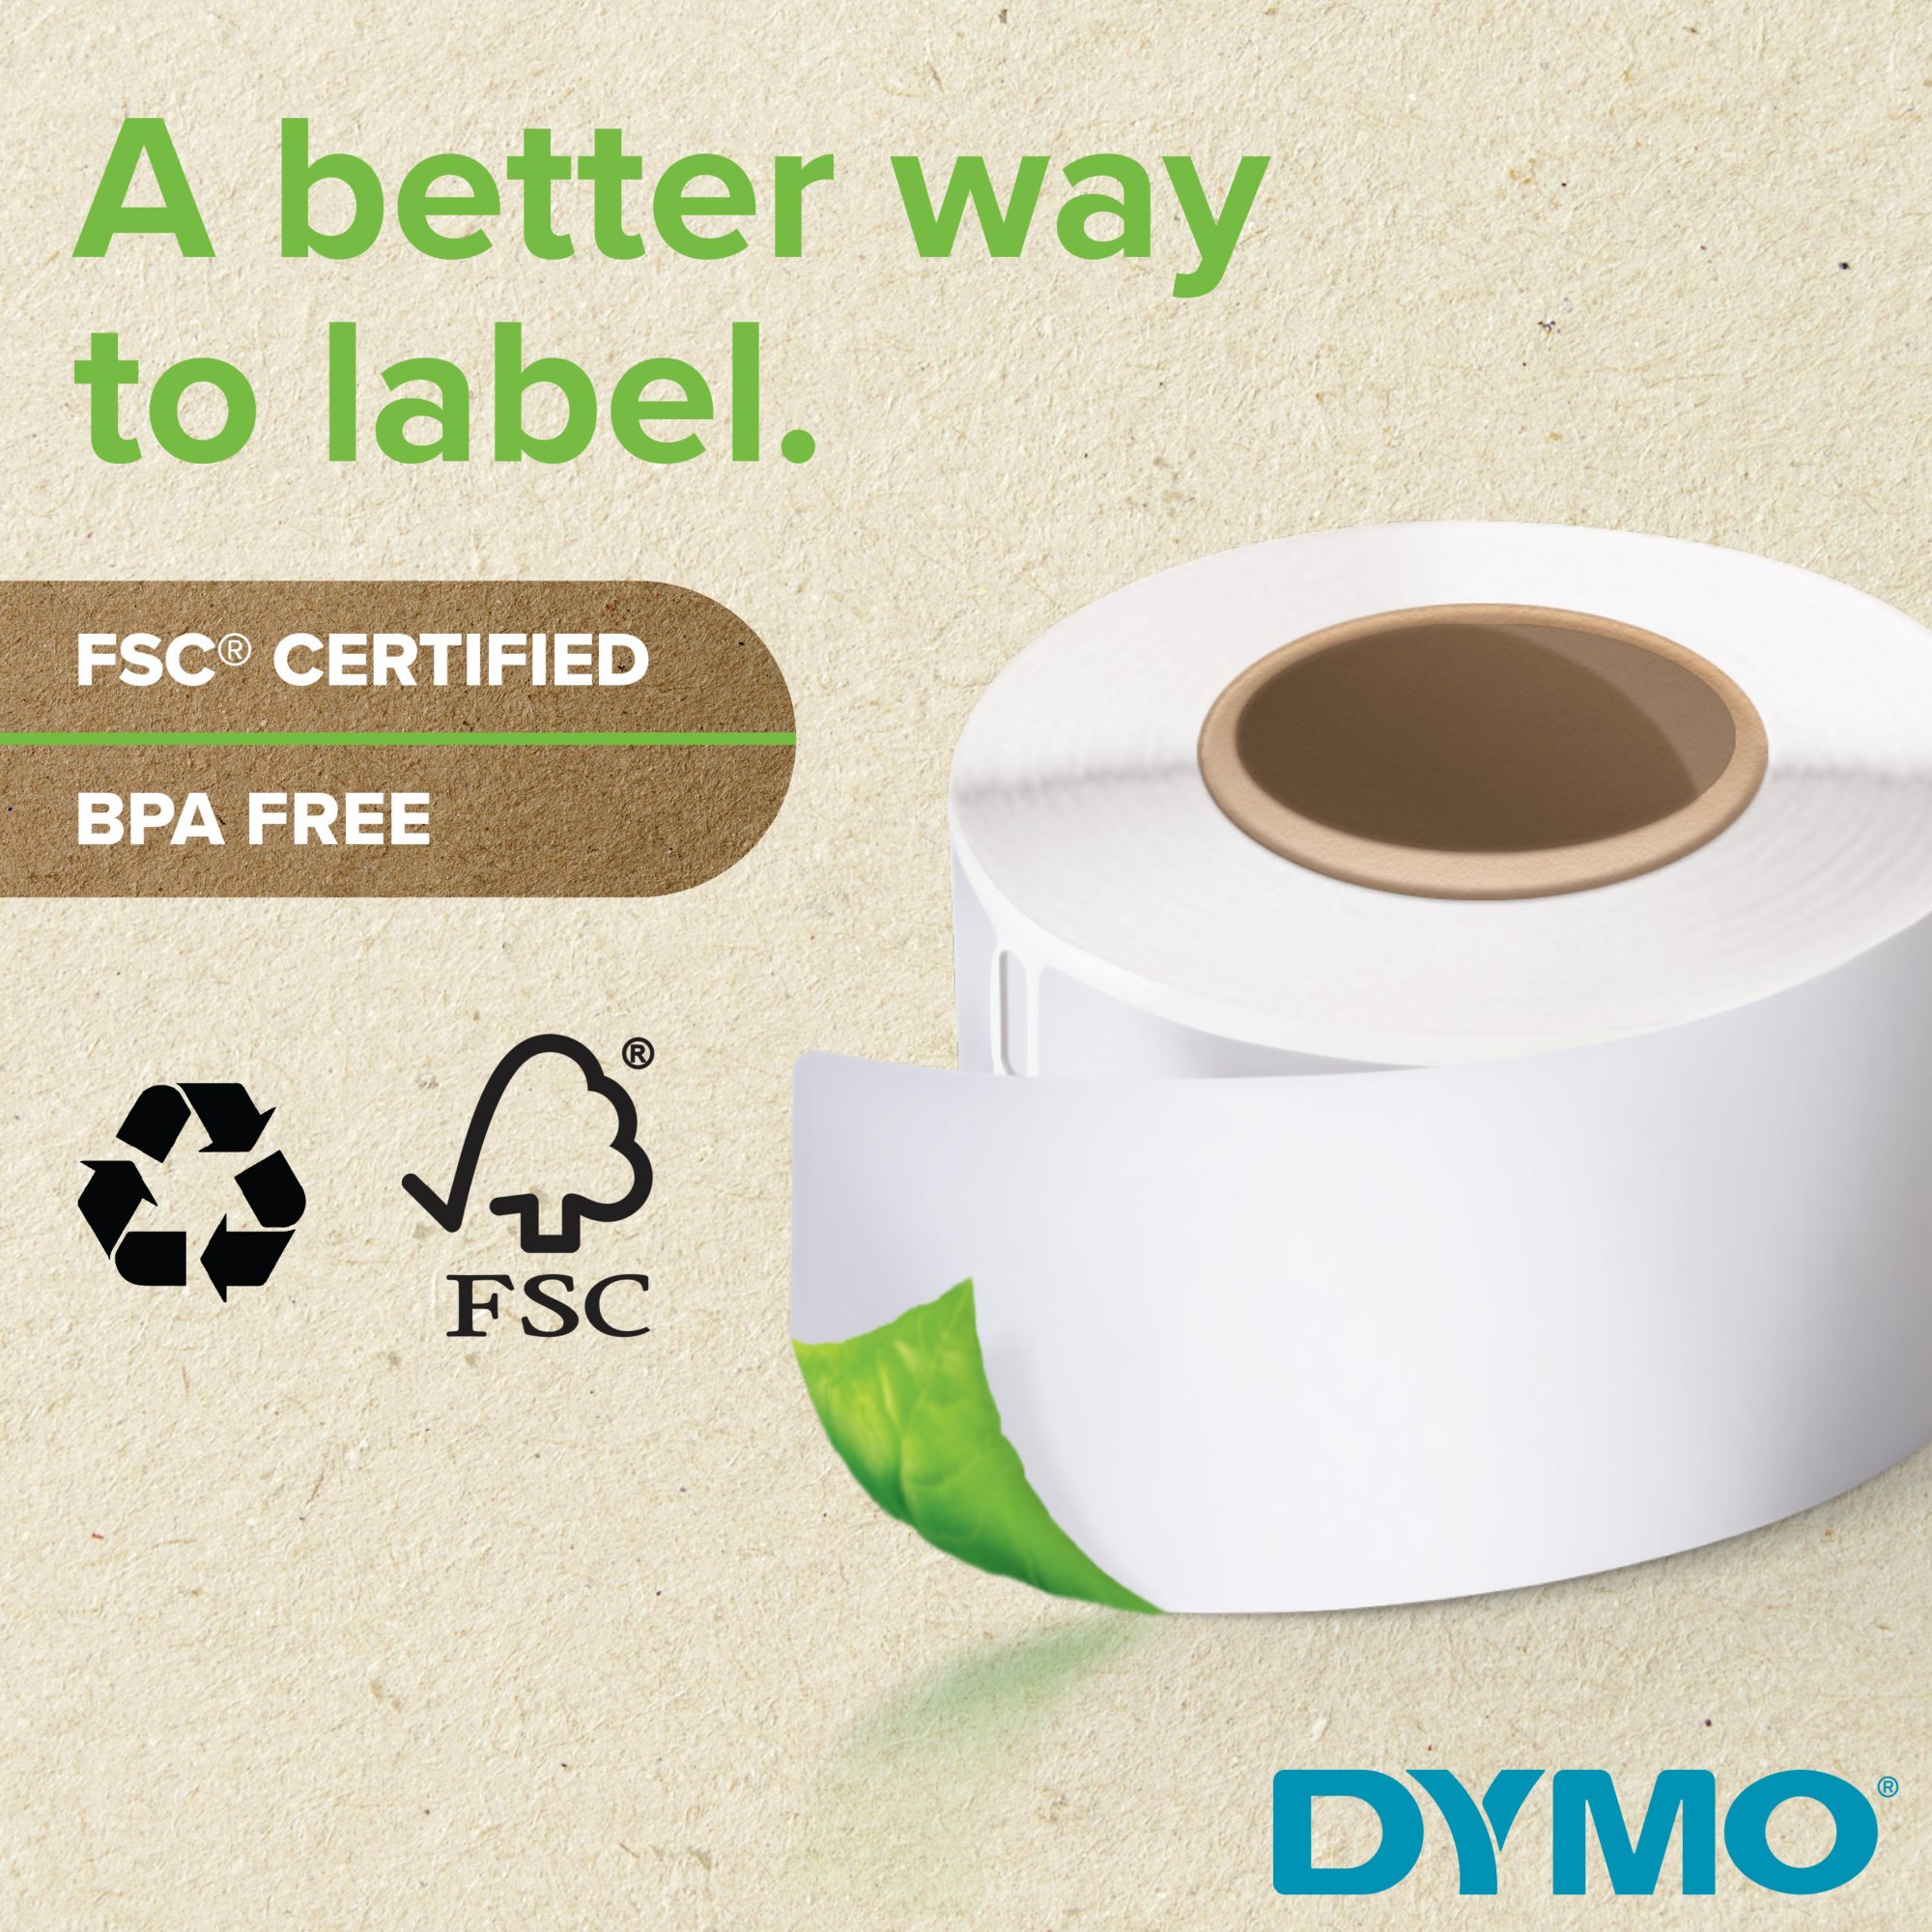 Dymo Étiquettes LabelWriter 4XL / 5XL extra larges blanches autocollantes  prédécoupées (102 x 210 mm) pour colis DHL - Modèle 2166659 - Rouleau de  140 étiquettes - Étiquettes Transfert Thermiquefavorable à acheter dans  notre magasin